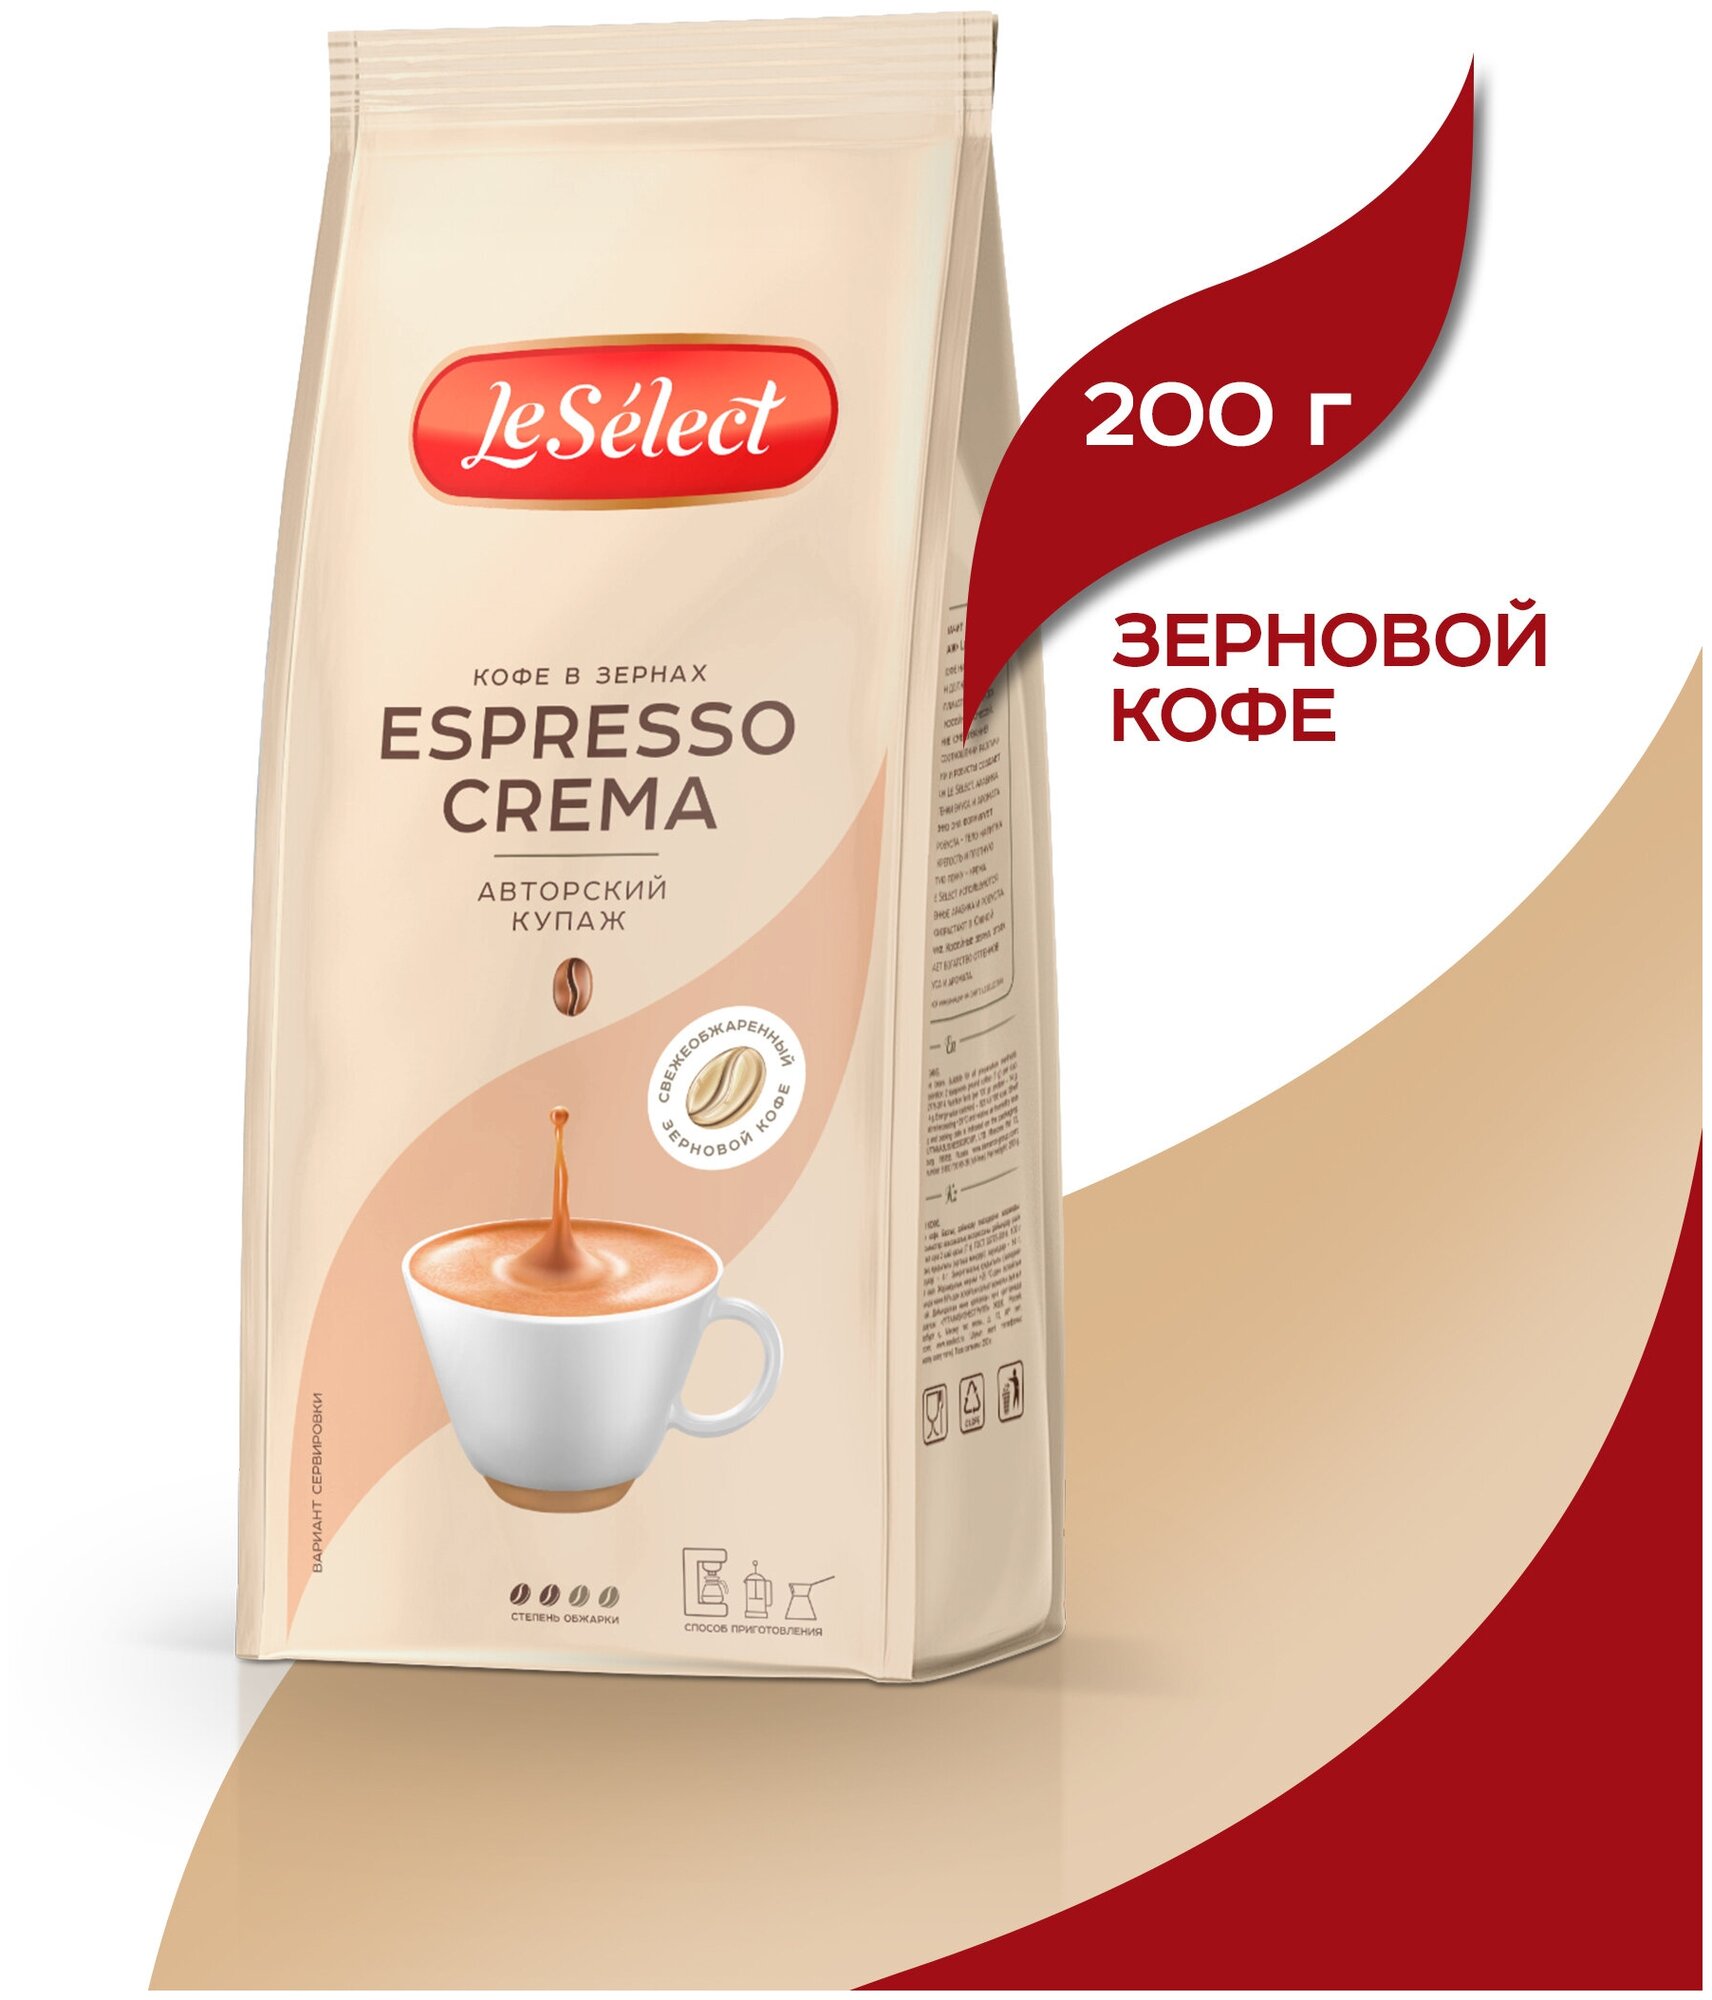 Кофе в зёрнах Espresso Crema, Le Select, арабика, робуста, свежеобжаренный, 200 г